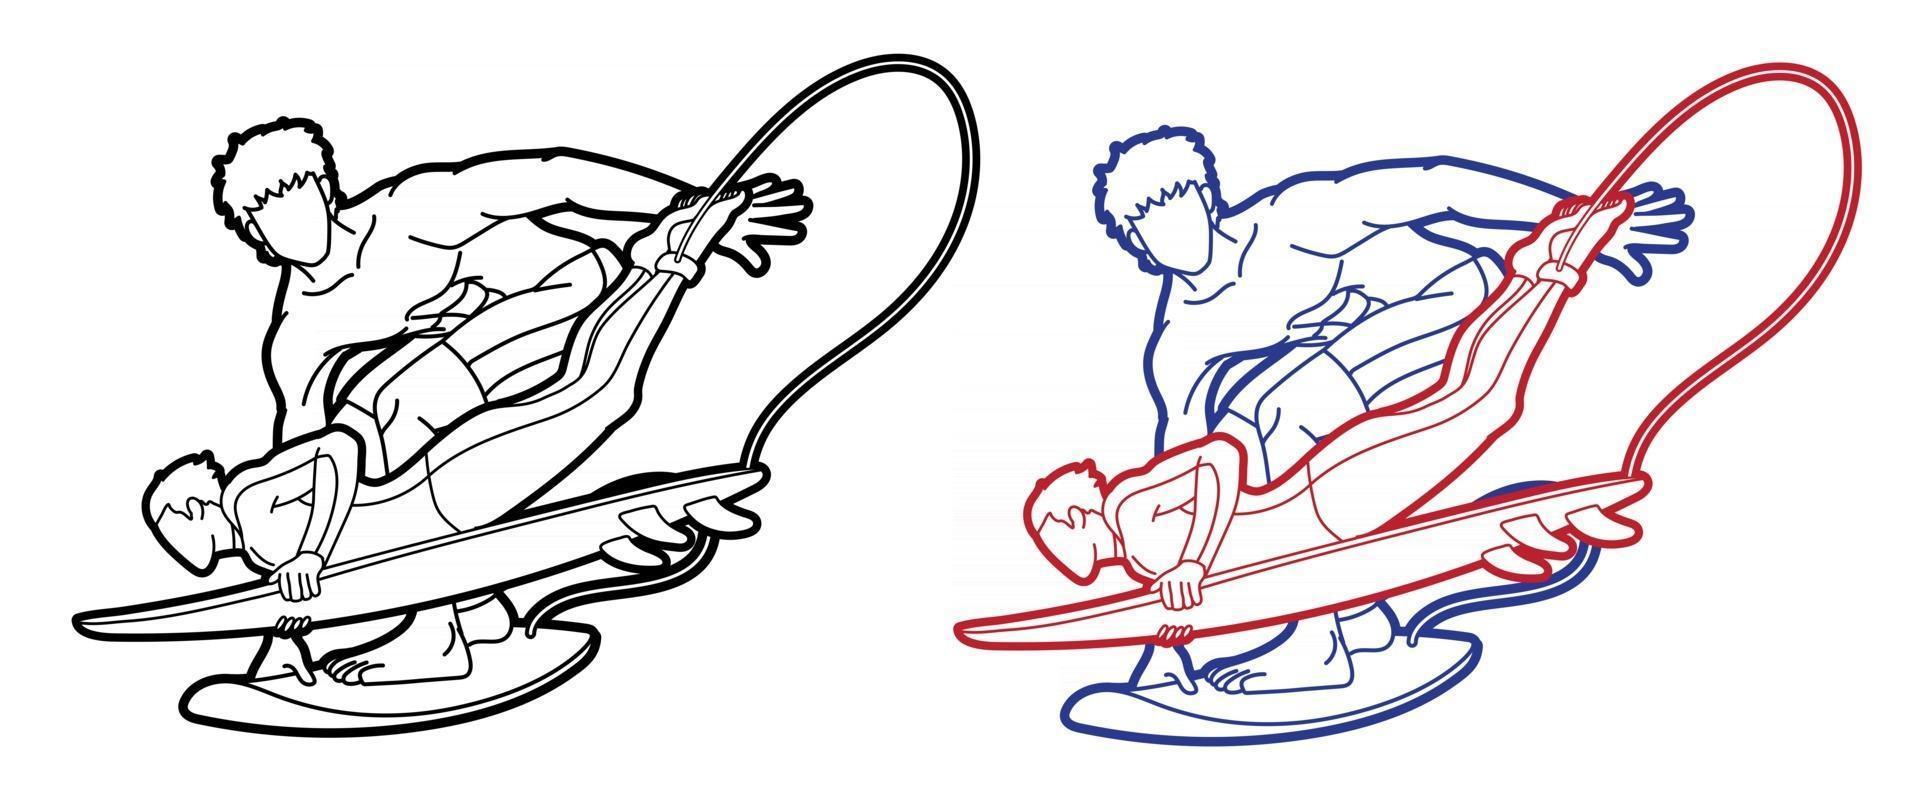 groupe de dessin animé de surfeur de l'équipe d'hommes de sport de surf vecteur